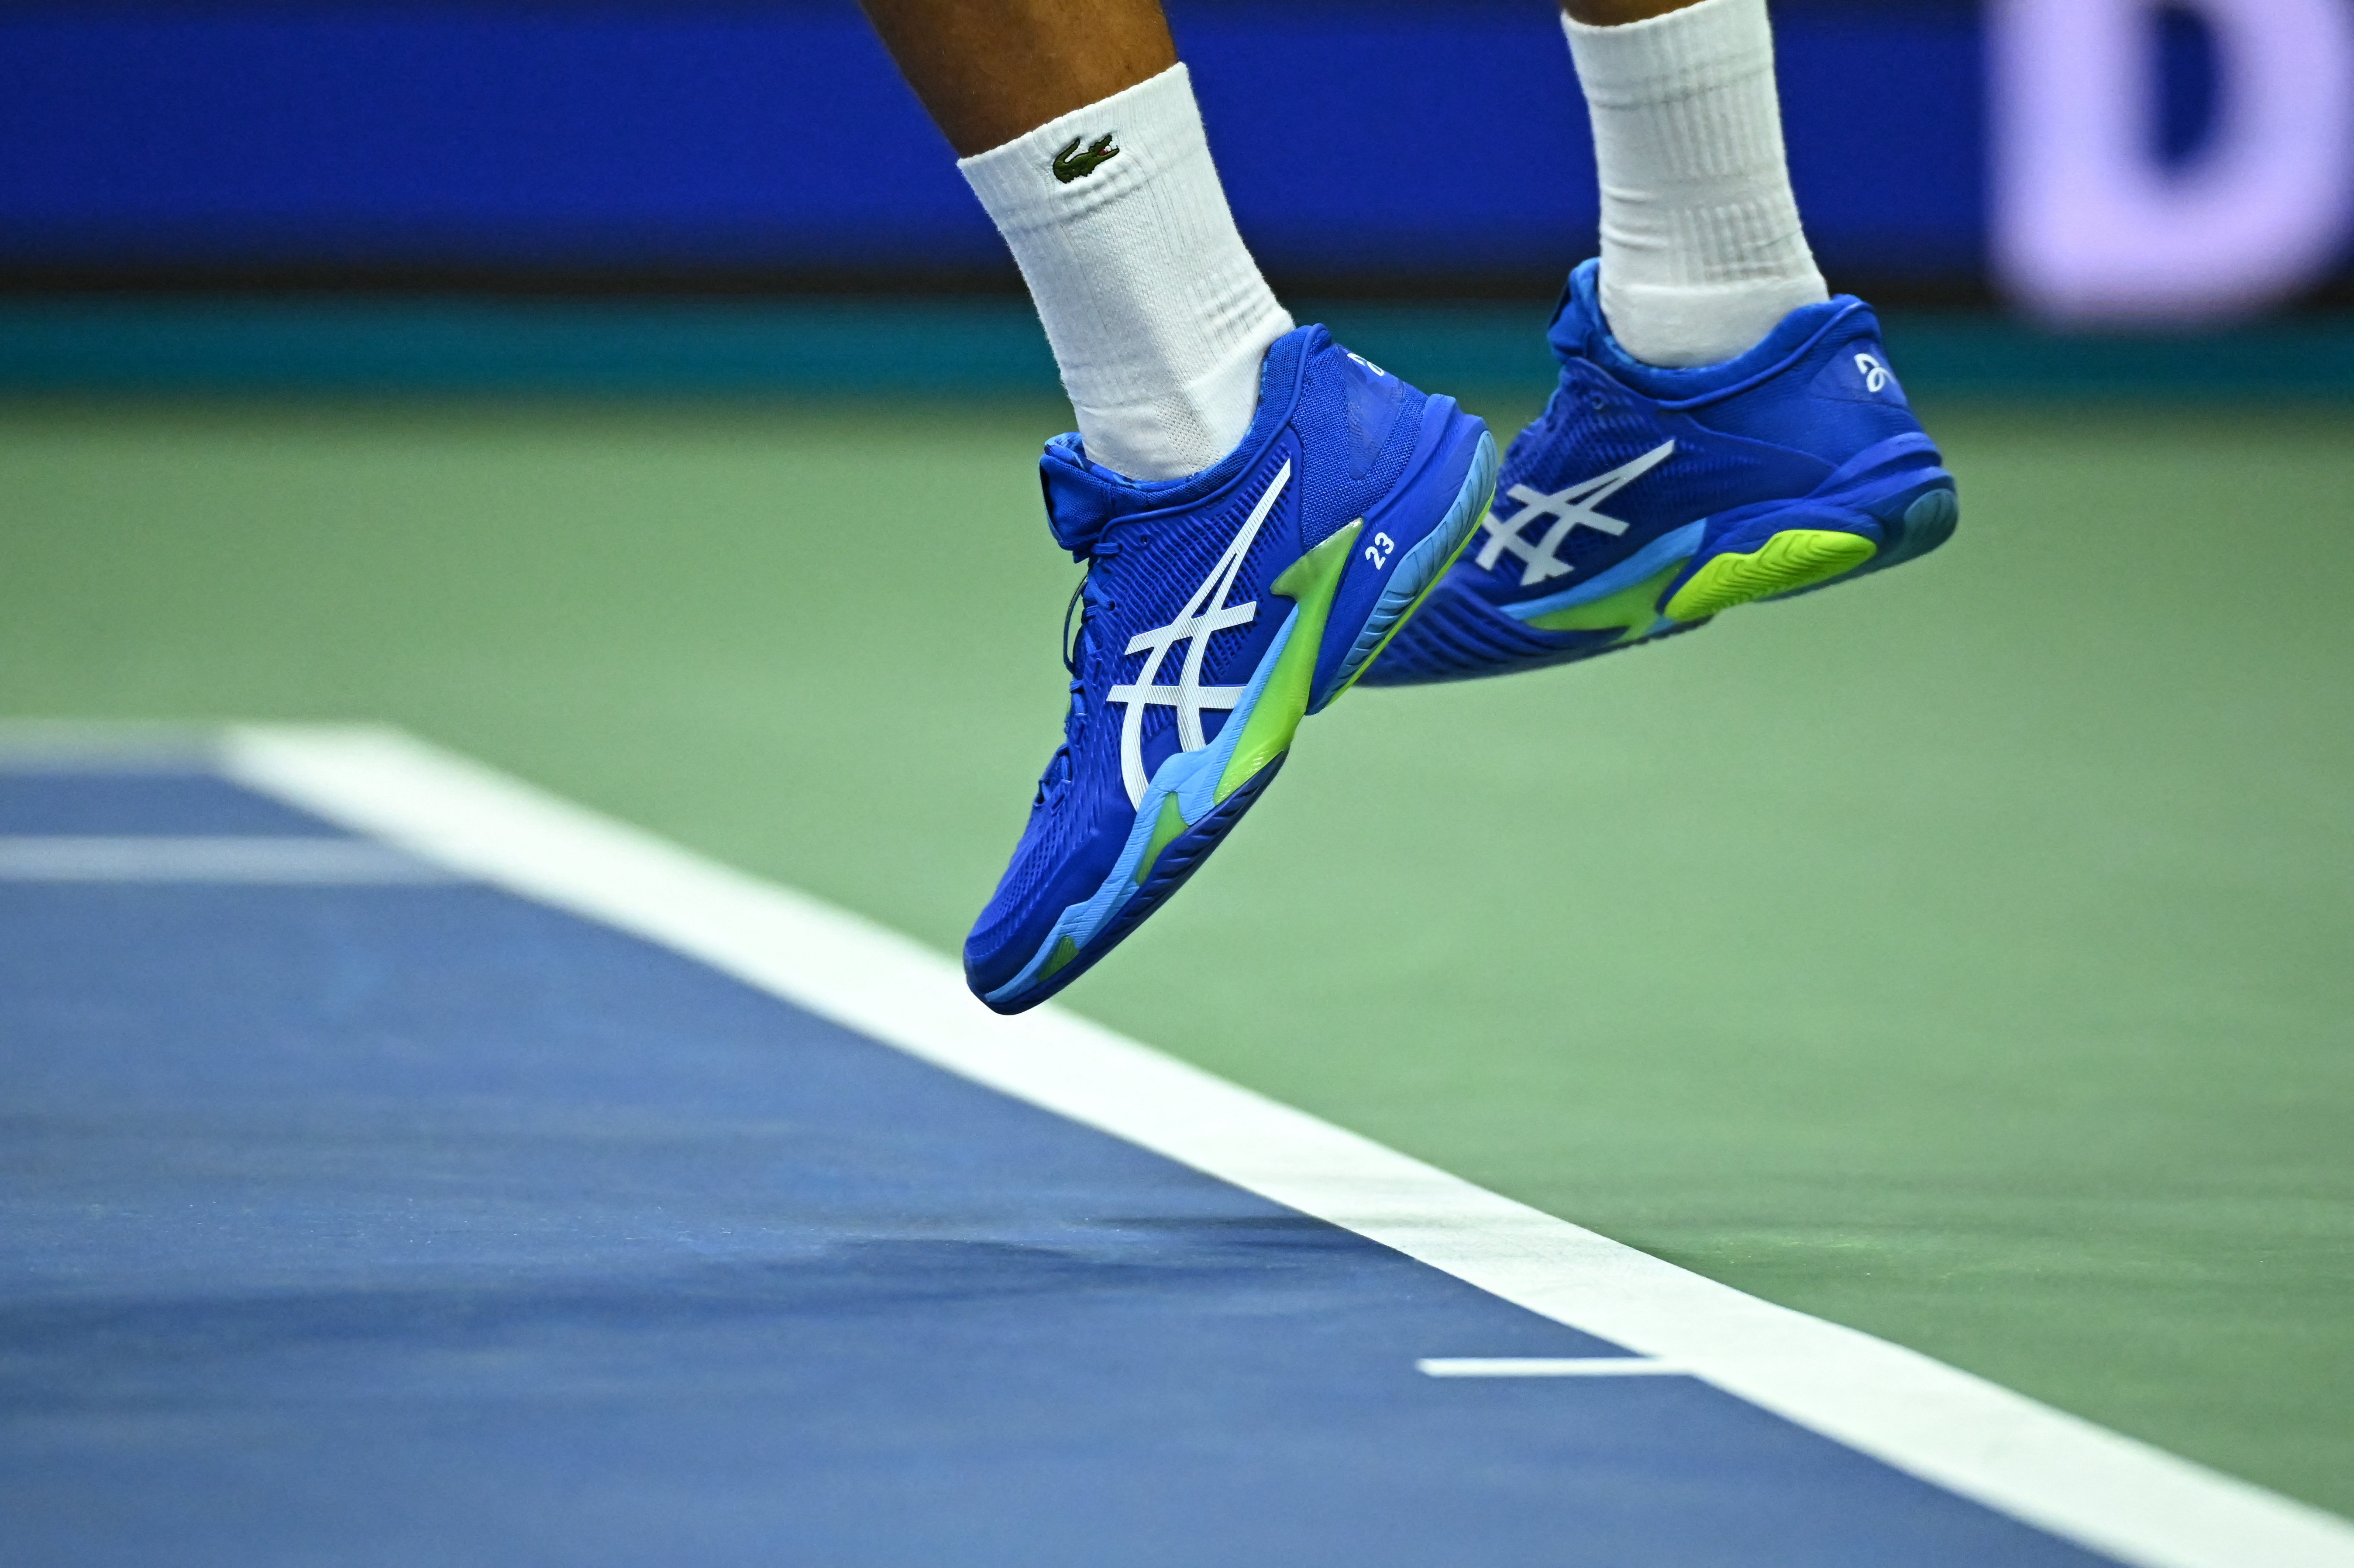 Een tennisser serveert op de banen van Flushing Meadows in New York tijdens de US Open